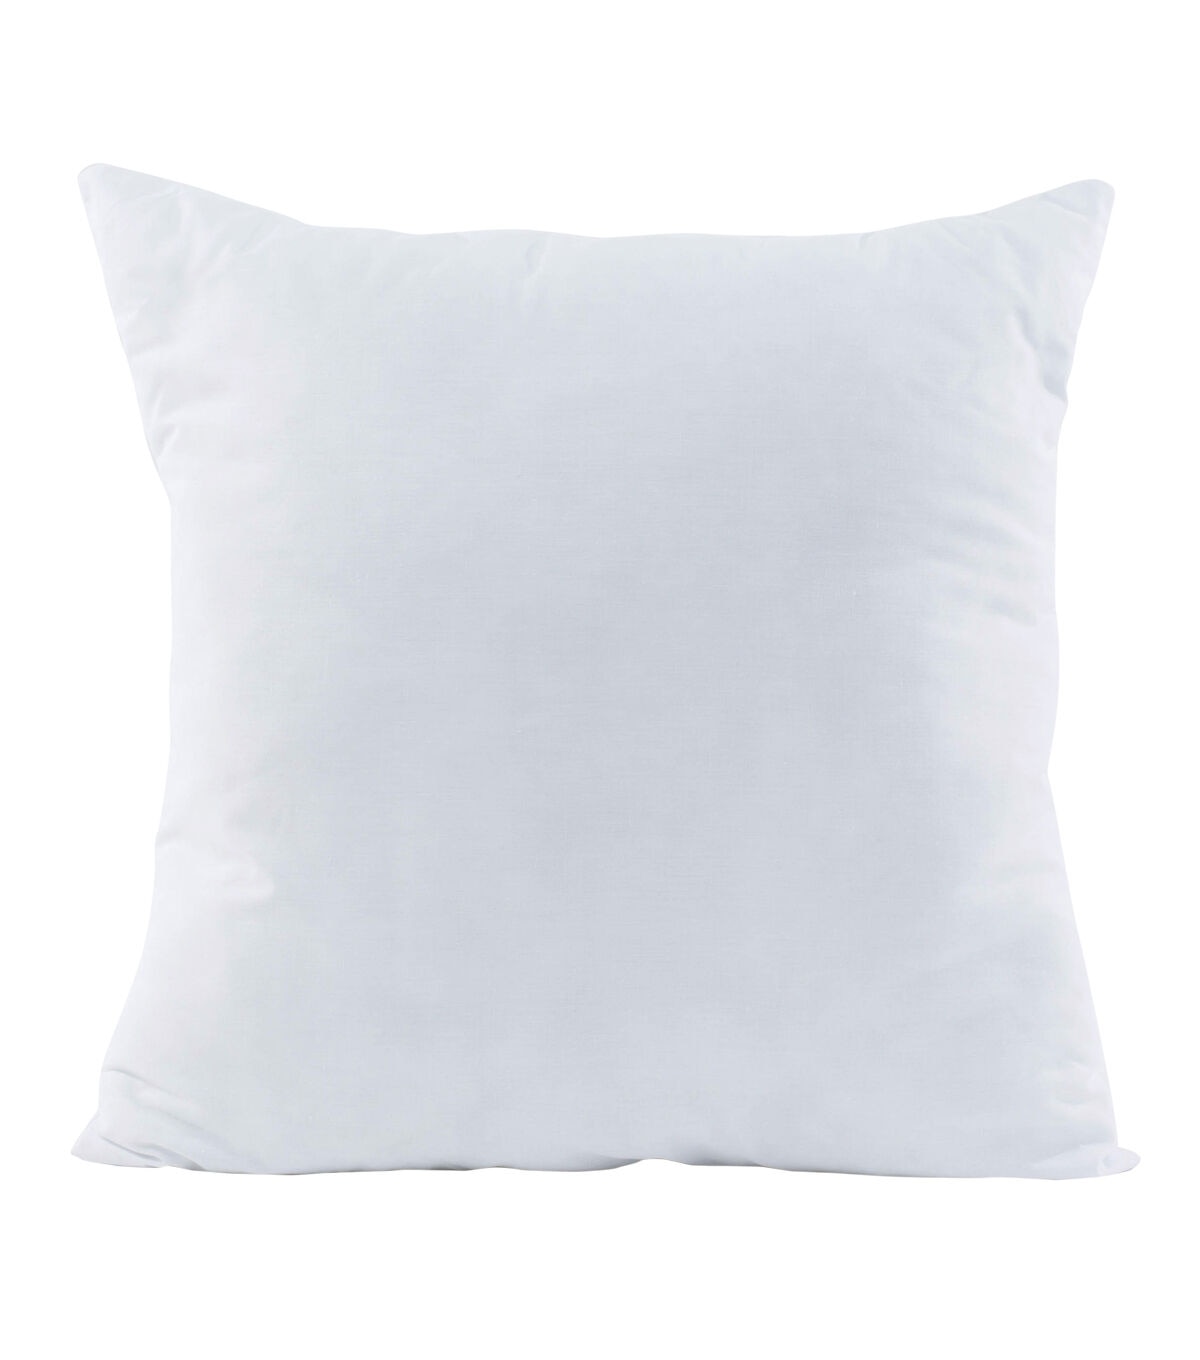 20x20 insert pillows